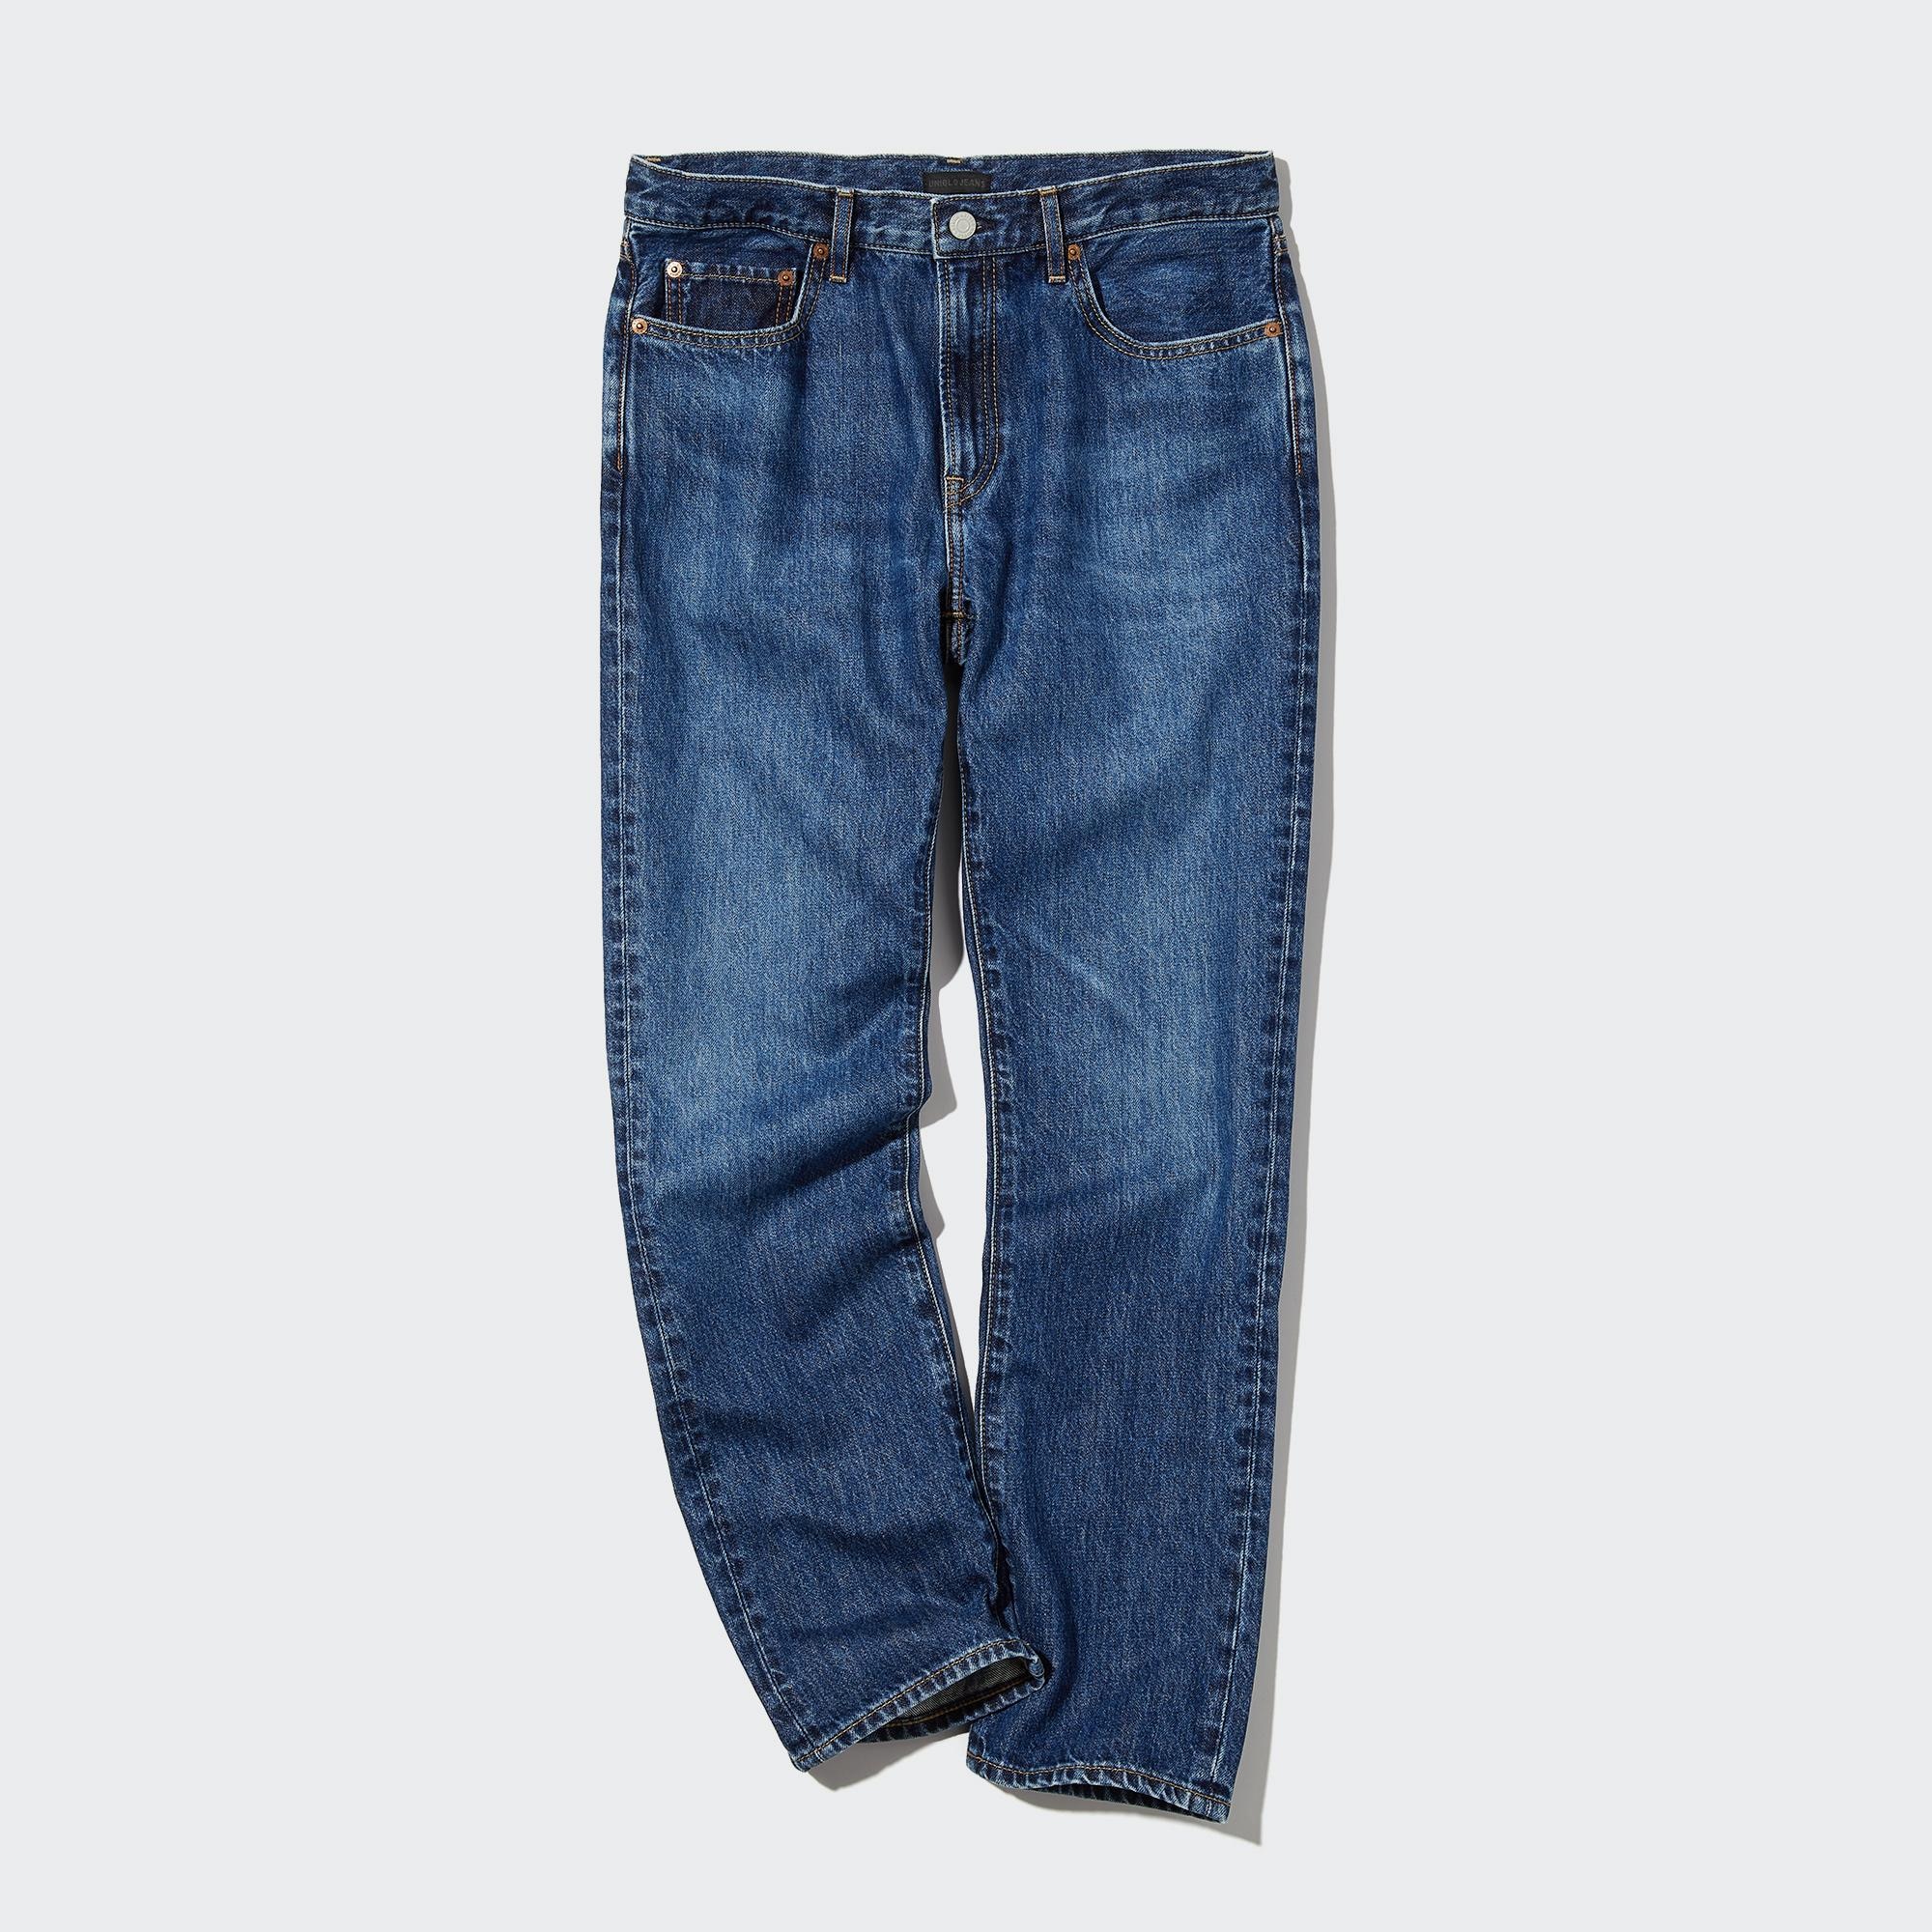 Bán Quần jeans nam LEVIS 511 giá rẻ bất ngờ! | Review ZimKen